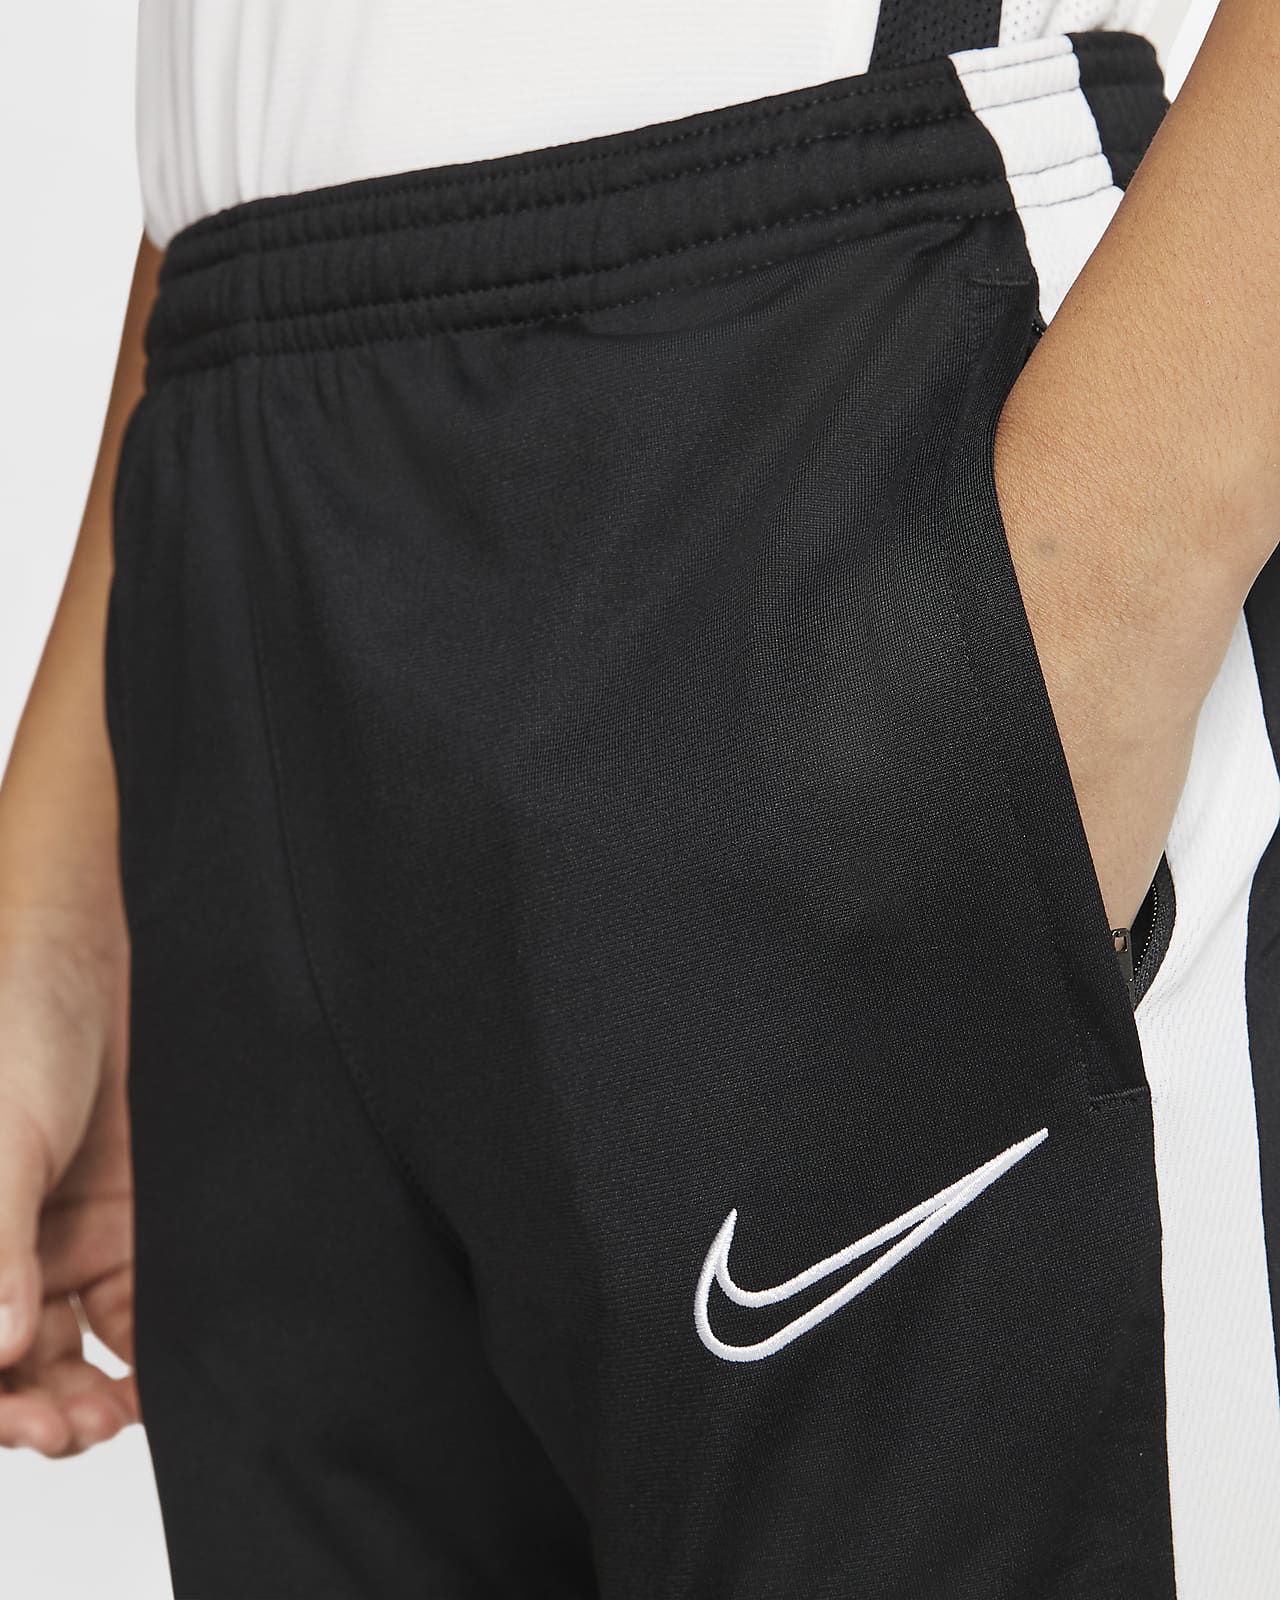 Nike公式 ナイキ Dri Fit アカデミー ジュニア サッカーパンツ オンラインストア 通販サイト